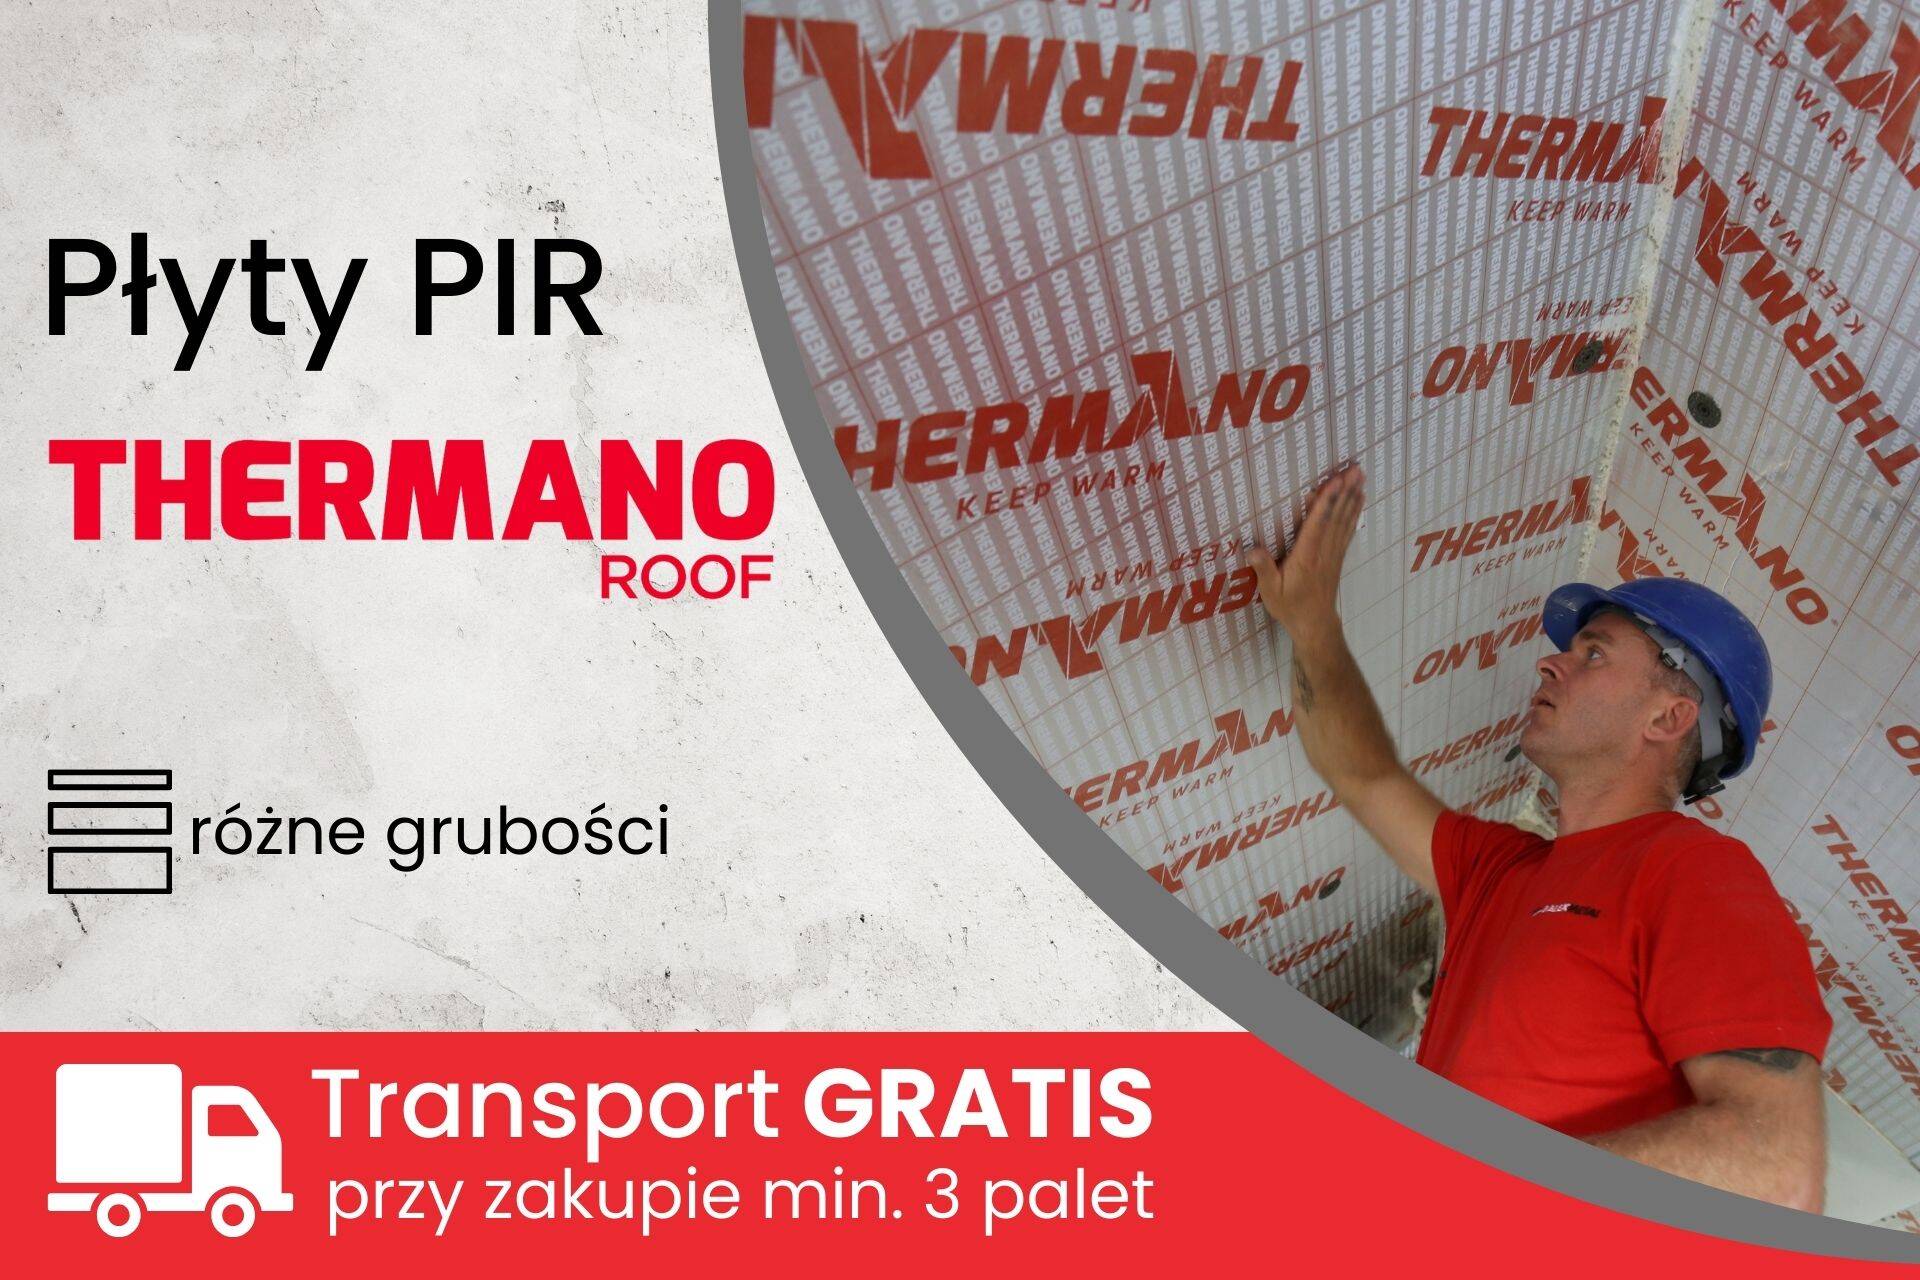 Płyty Thermano Roof Top - promocyjny transport na płyty PIR w budowlanym  sklepie internetowym Lubar